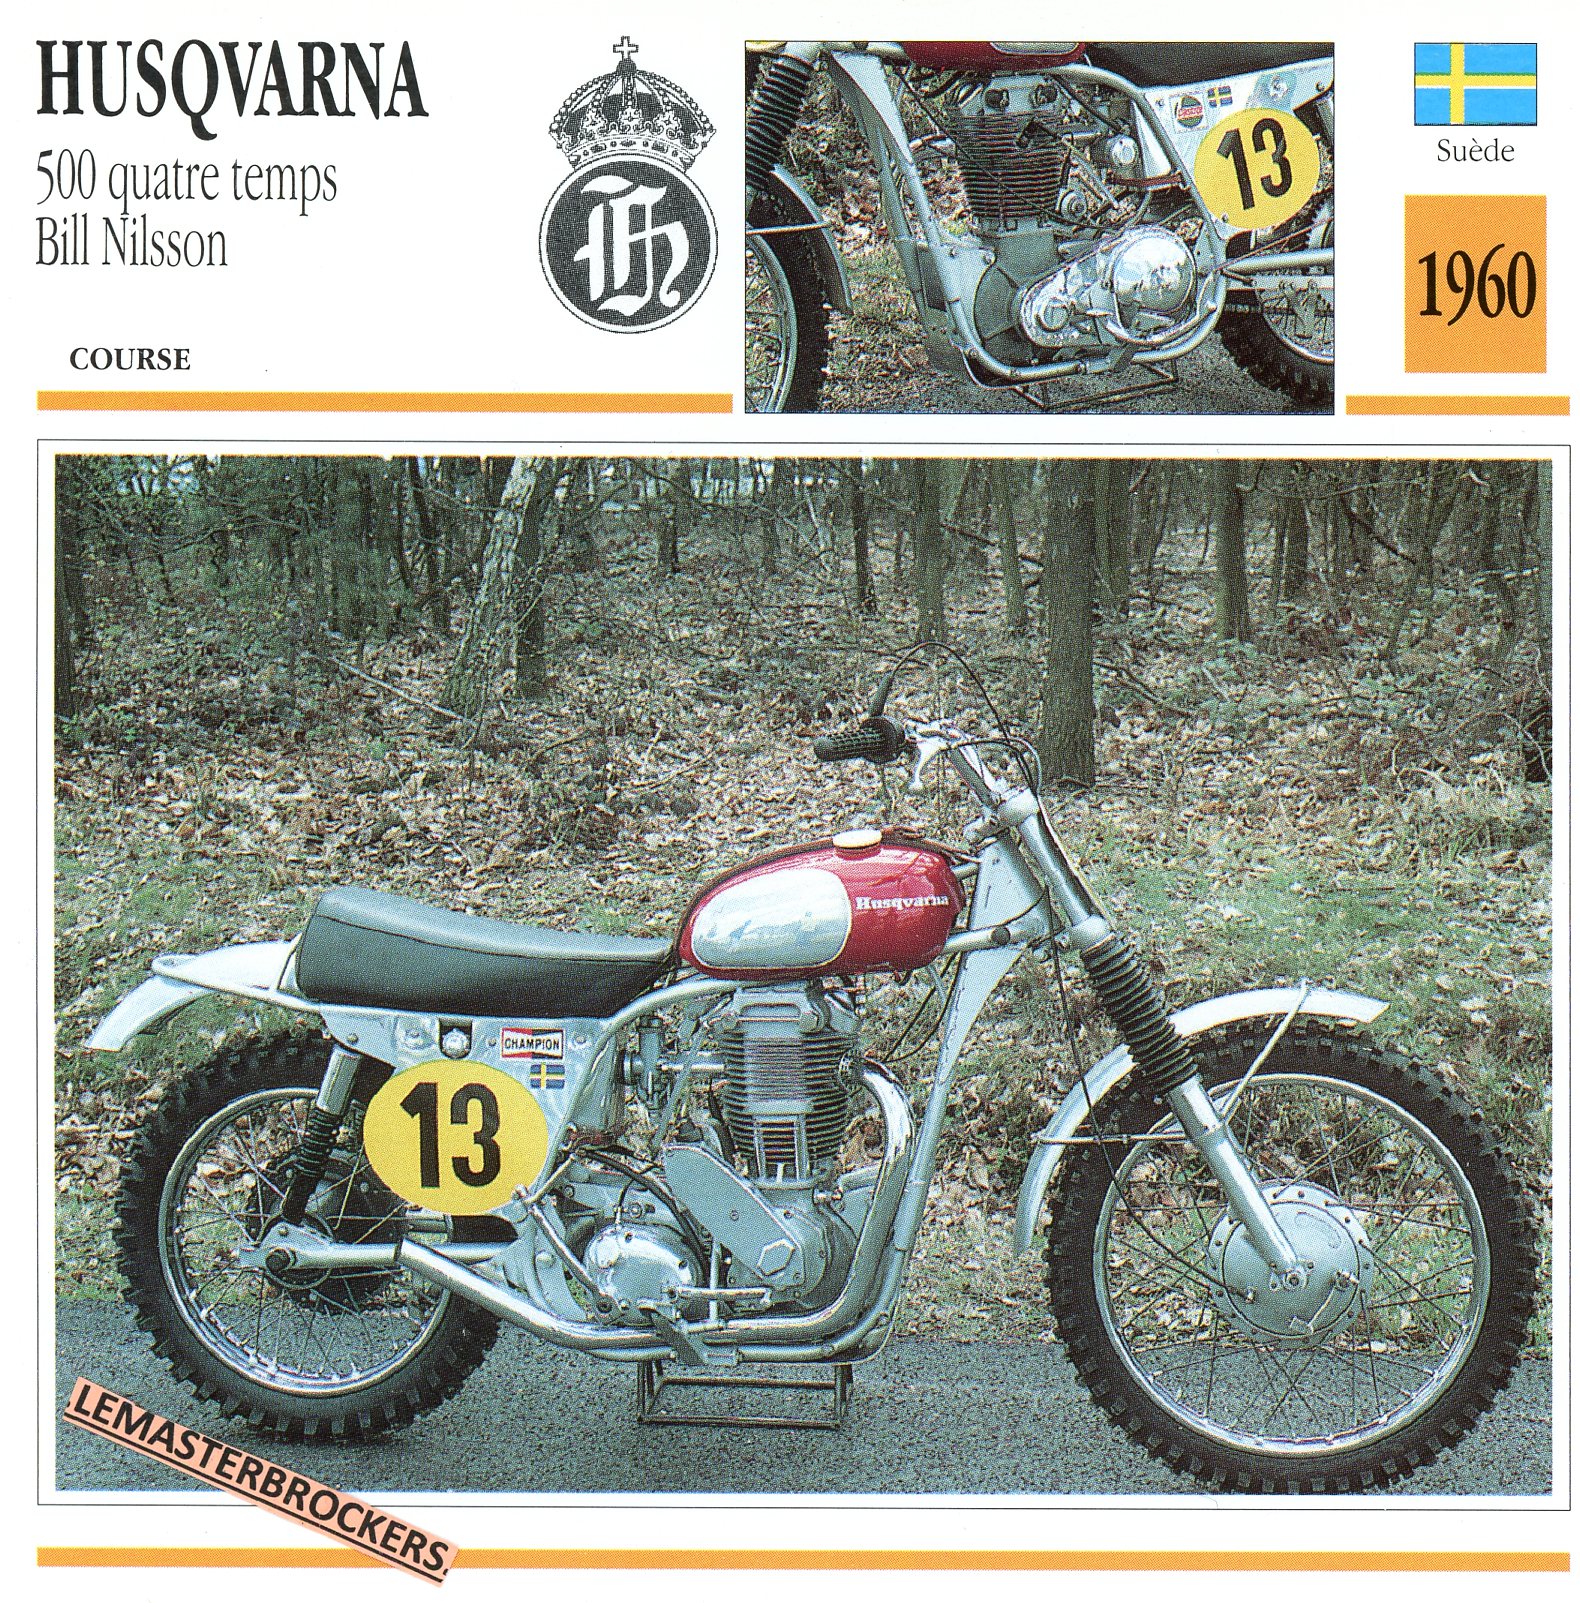 HUSQVARNA-500-4T-BILL-NILSSON-1960-FICHE-MOTO-LEMASTERBROCKERS